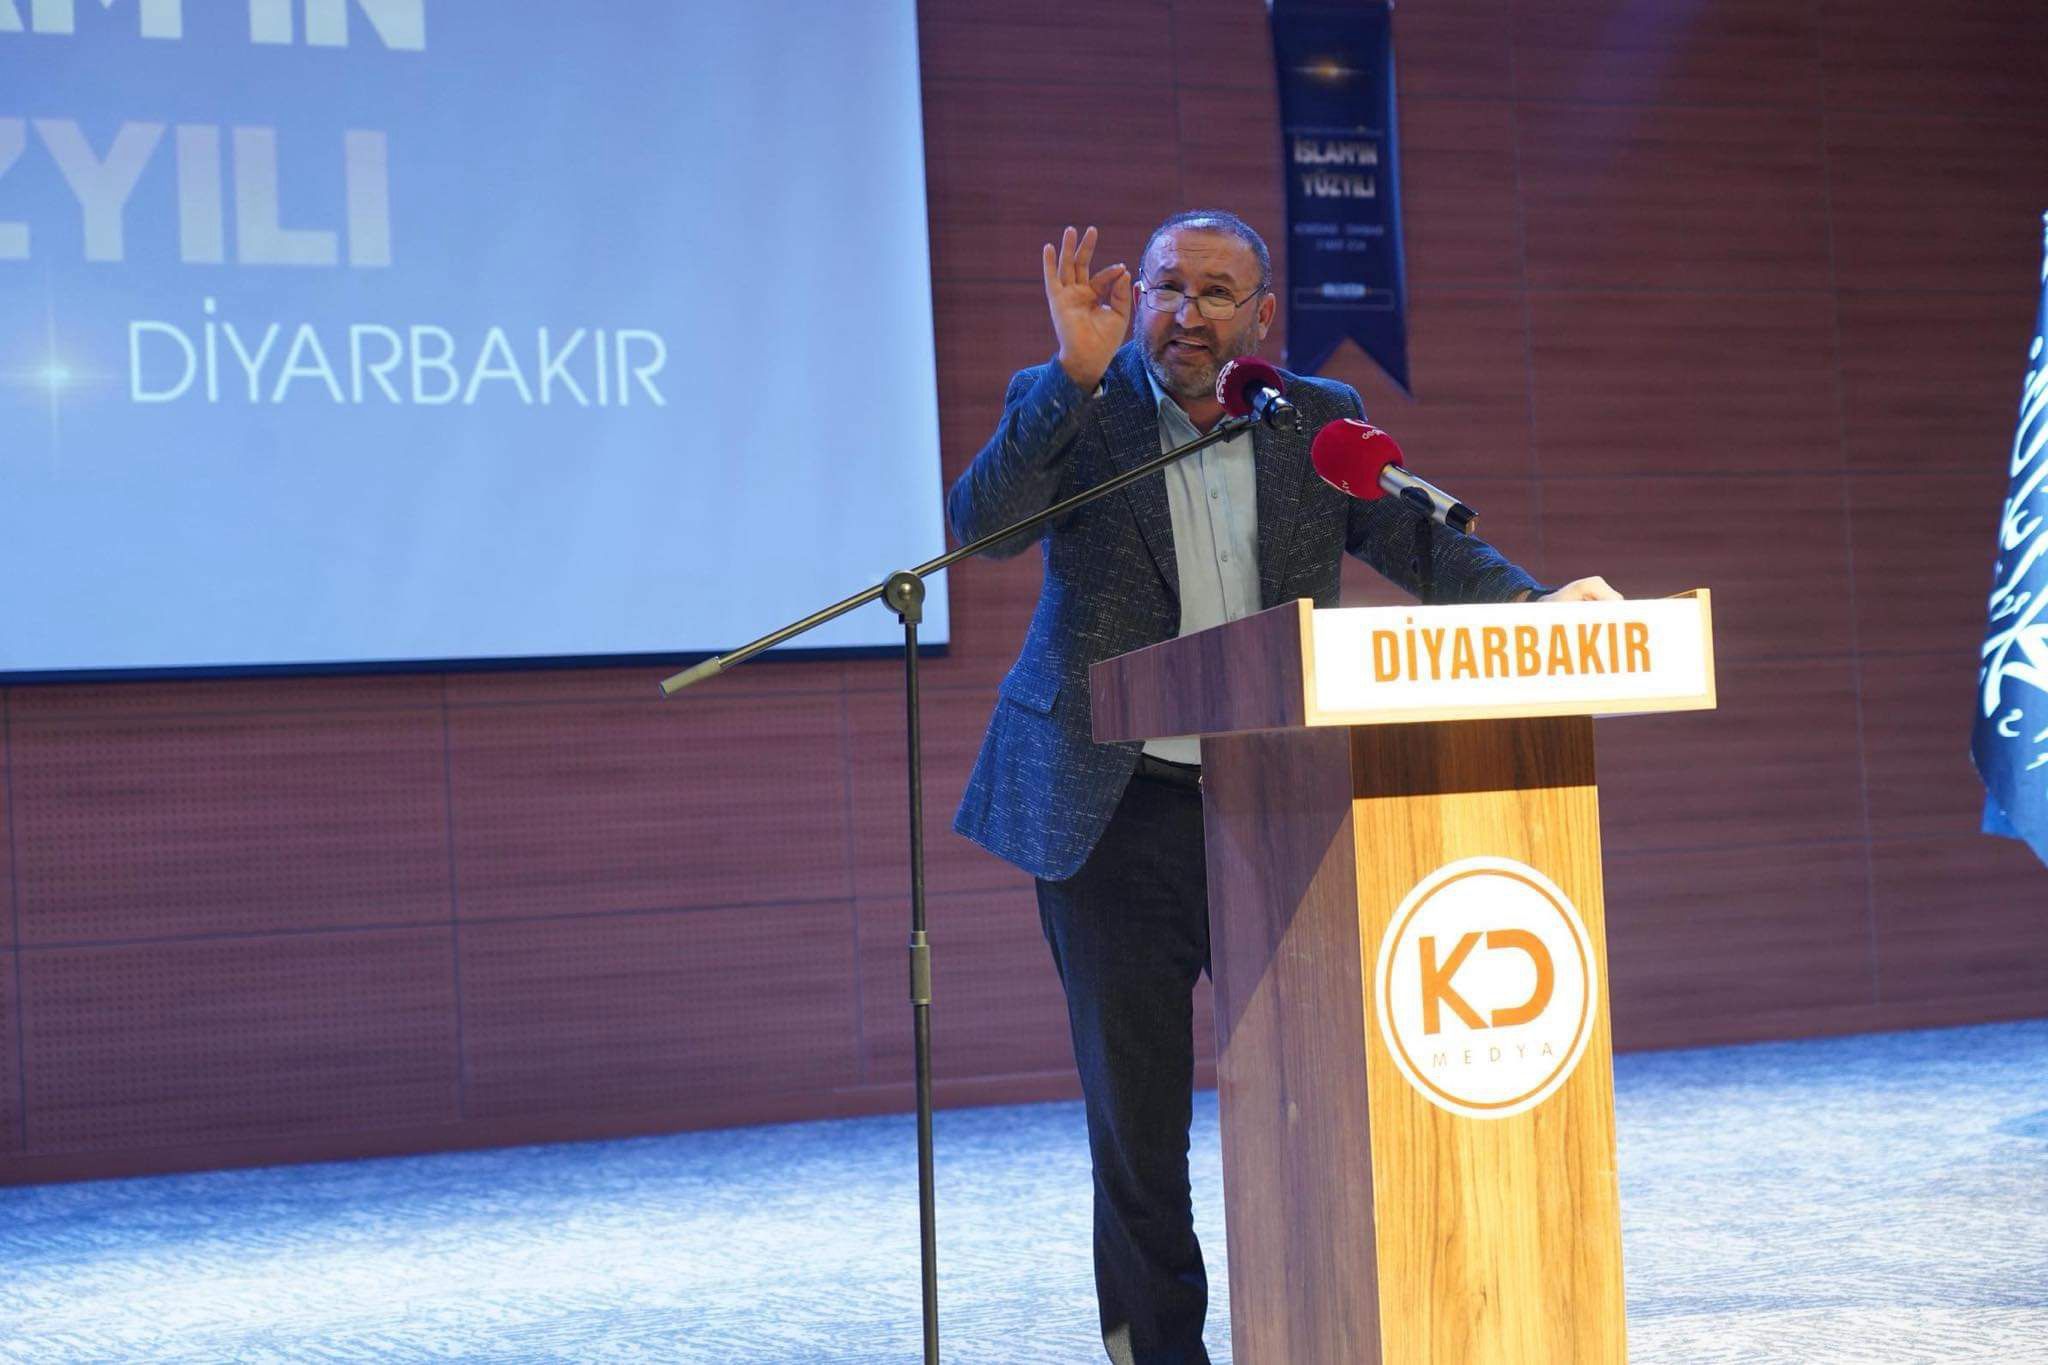 Köklü Değişim, Diyarbakır’da Düzenlediği Konferansta “Hilafet”i Konuştu-Mehmet Emin Kutluay.jpeg